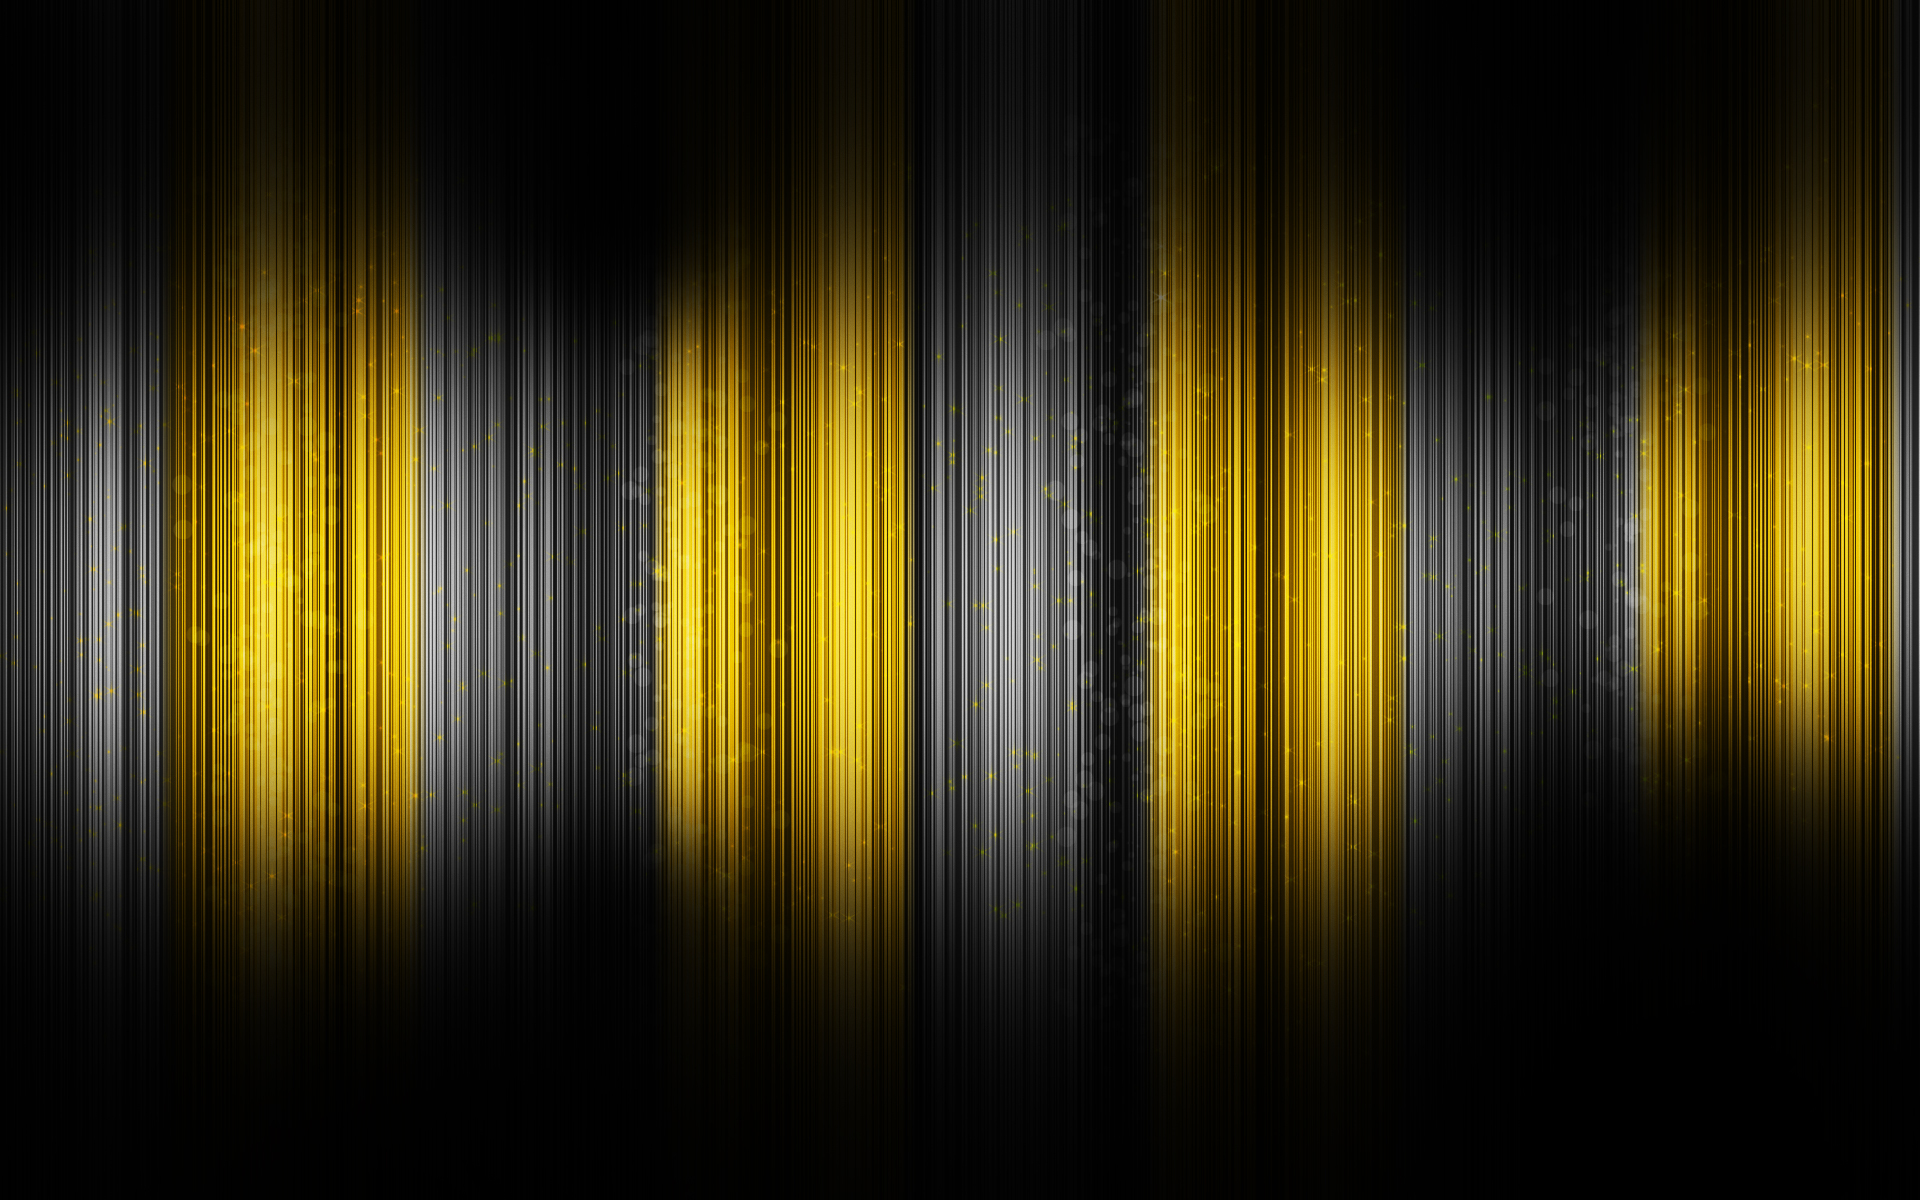 [39+] Black and Gold Abstract Wallpaper - WallpaperSafari